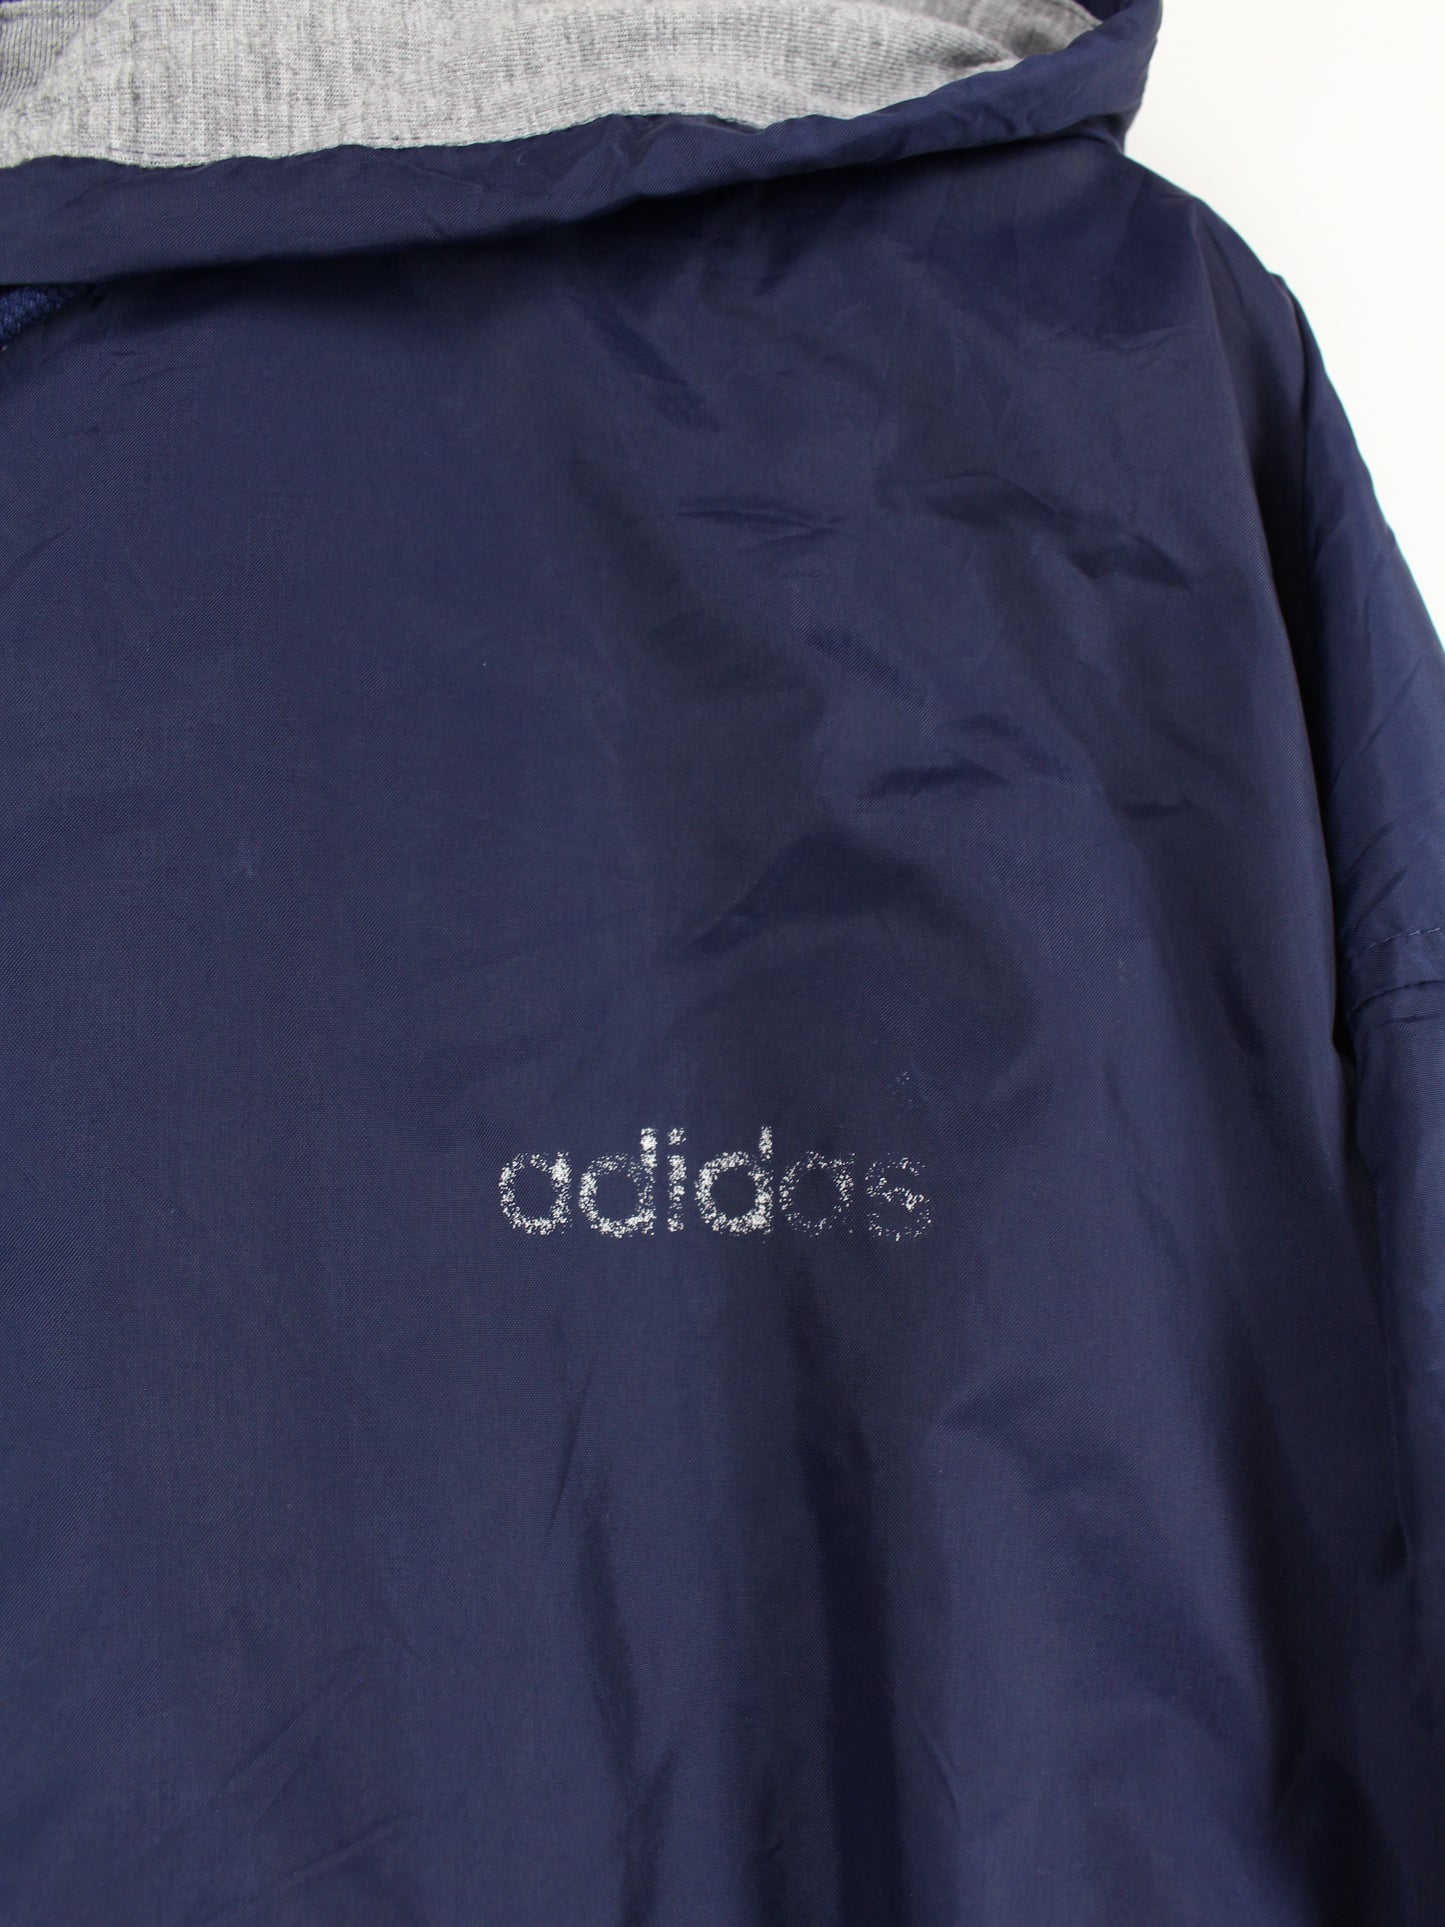 Adidas 90s Jacke Blau XL